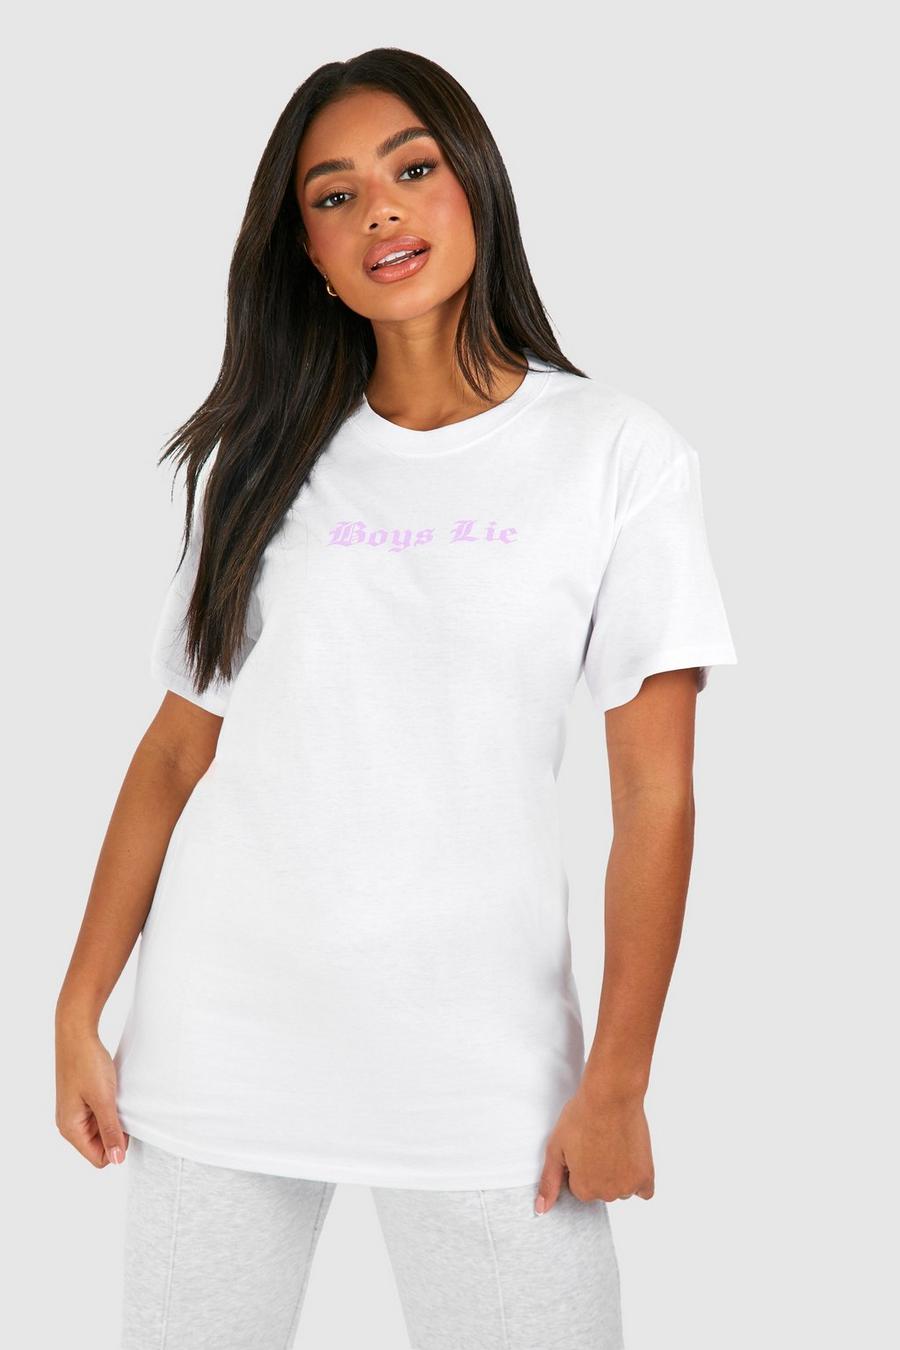 T-shirt oversize en coton à slogan Boys Lie, White image number 1